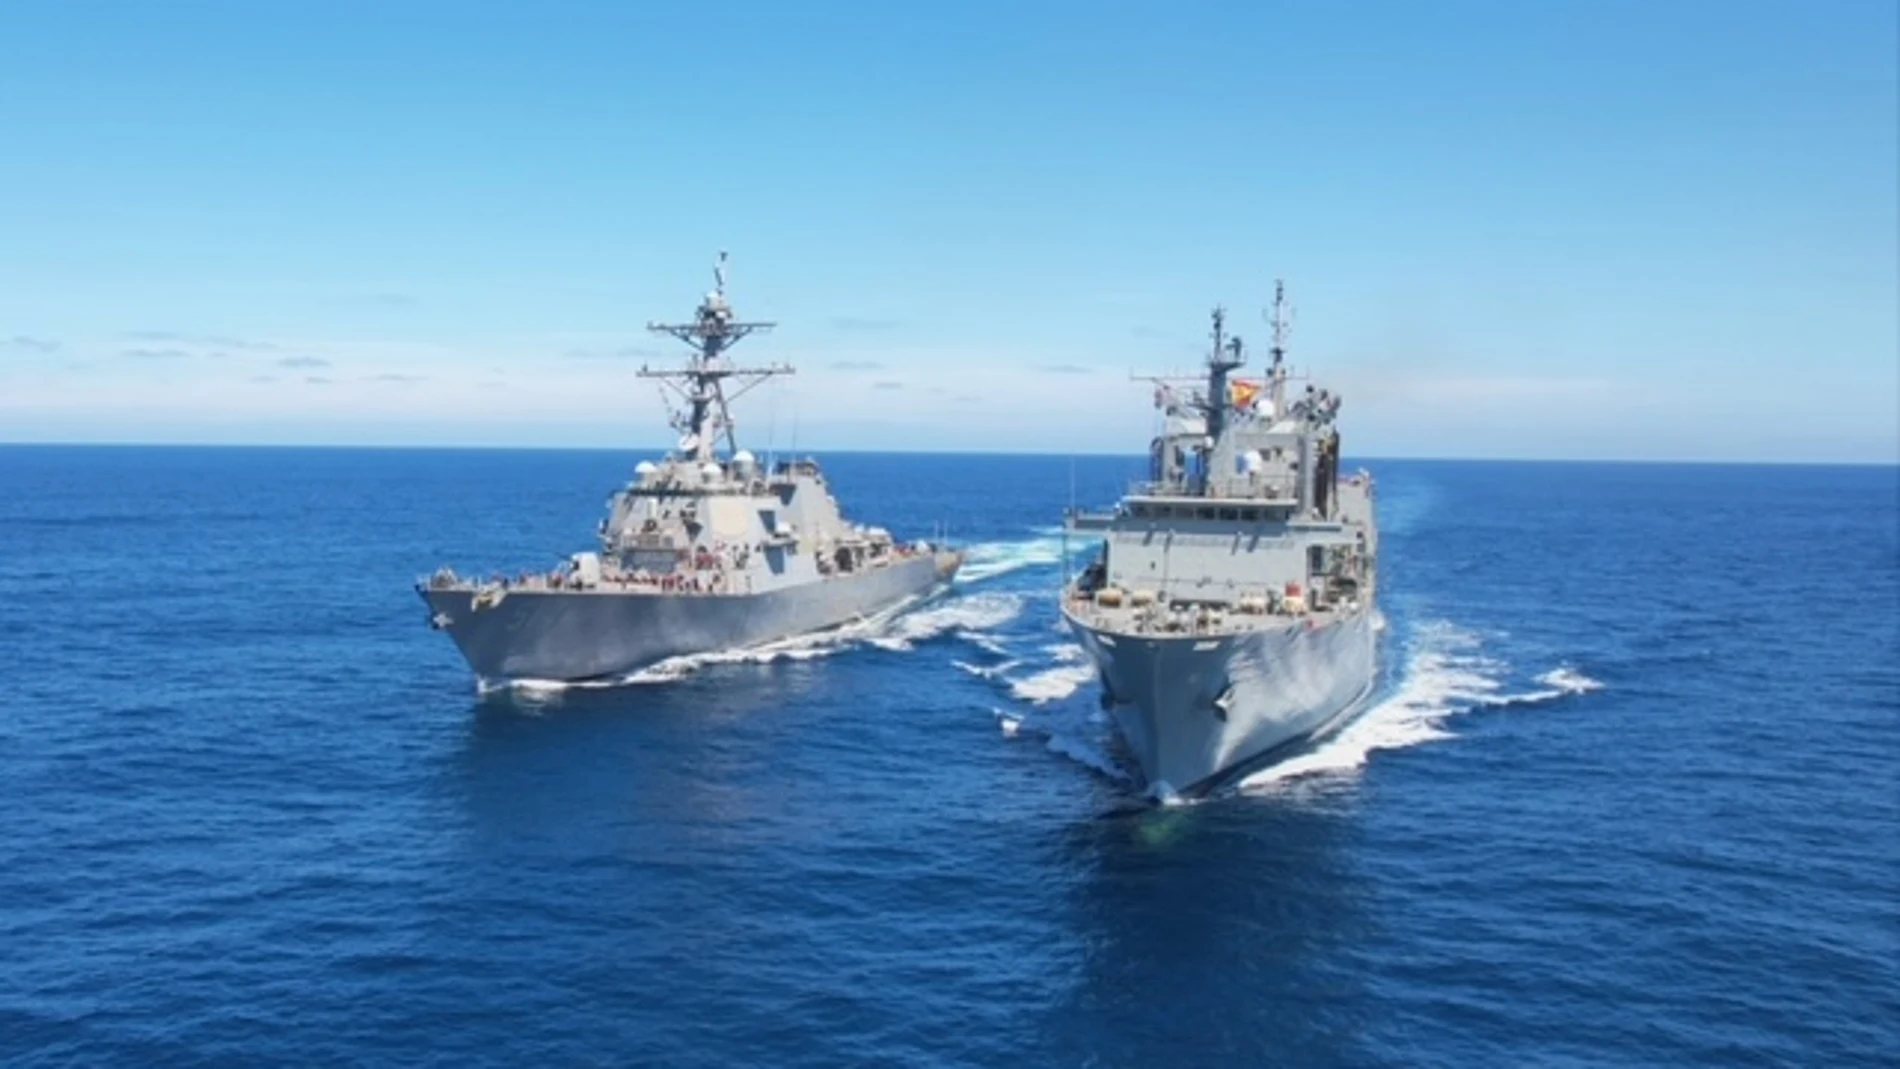 La fragata “Santa María” y el destructor norteamericano “USS Arleigh Burke” durante las maniobras